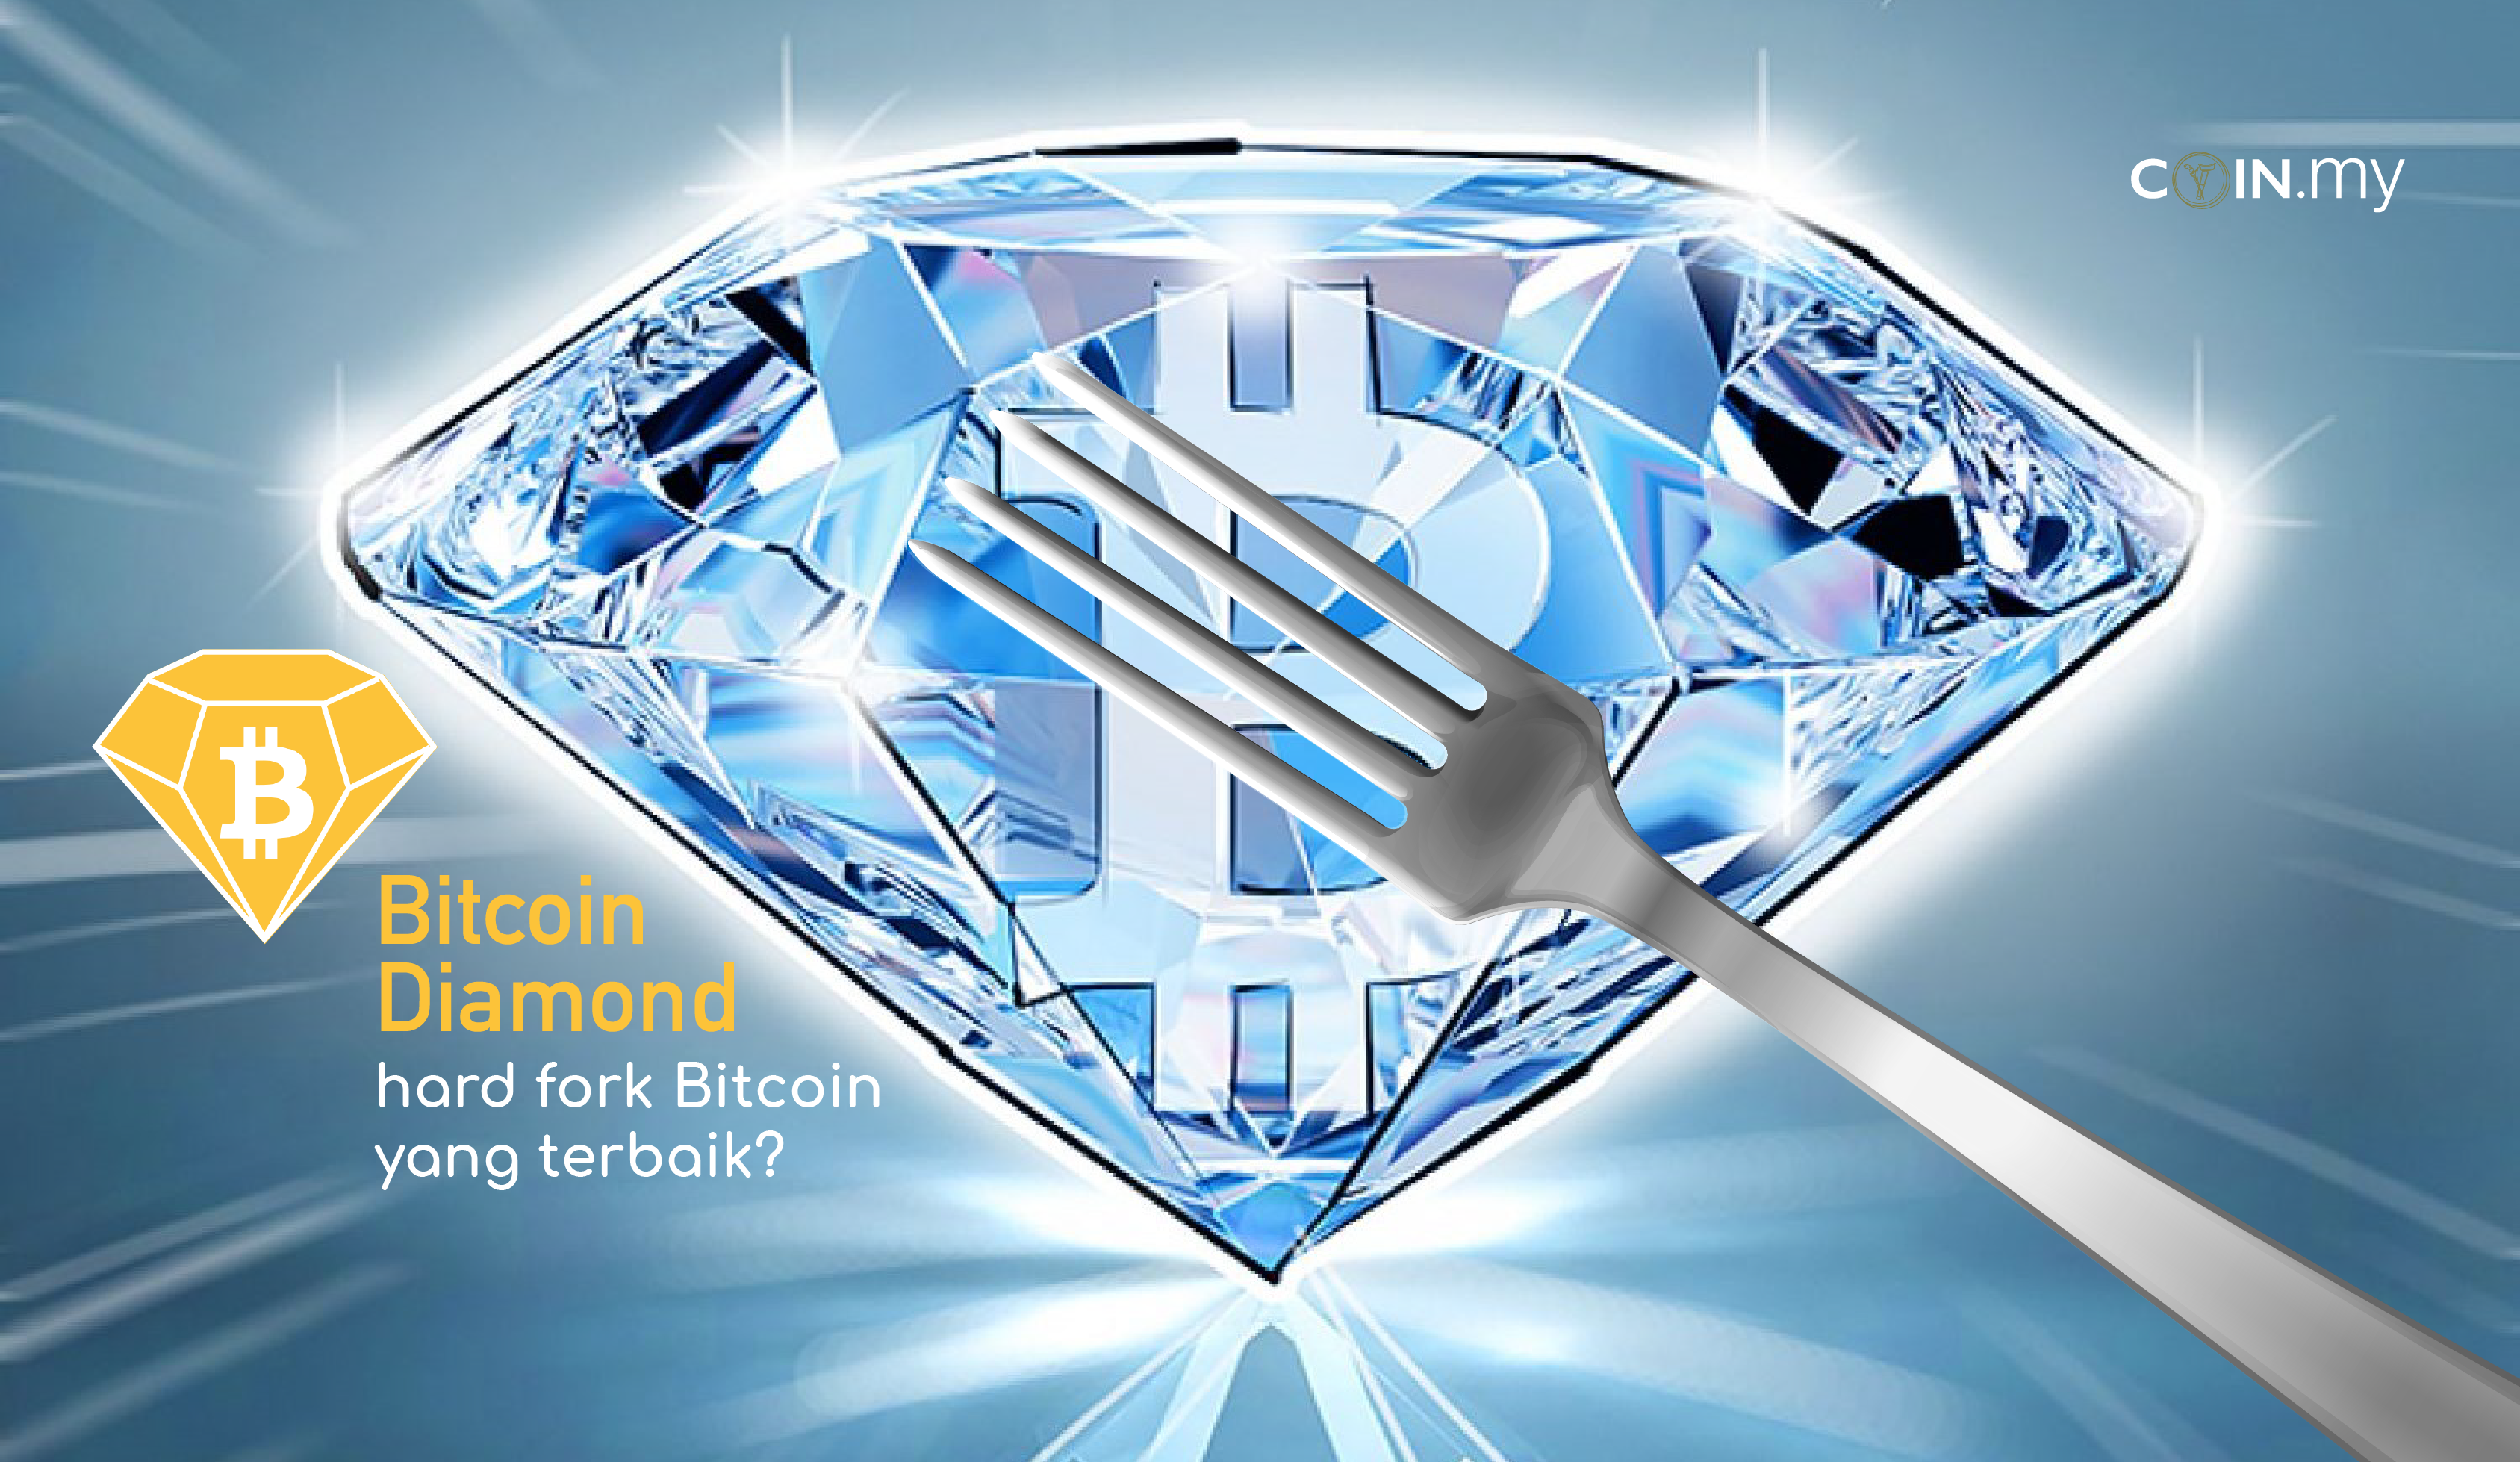 How do i get my bitcoin diamond